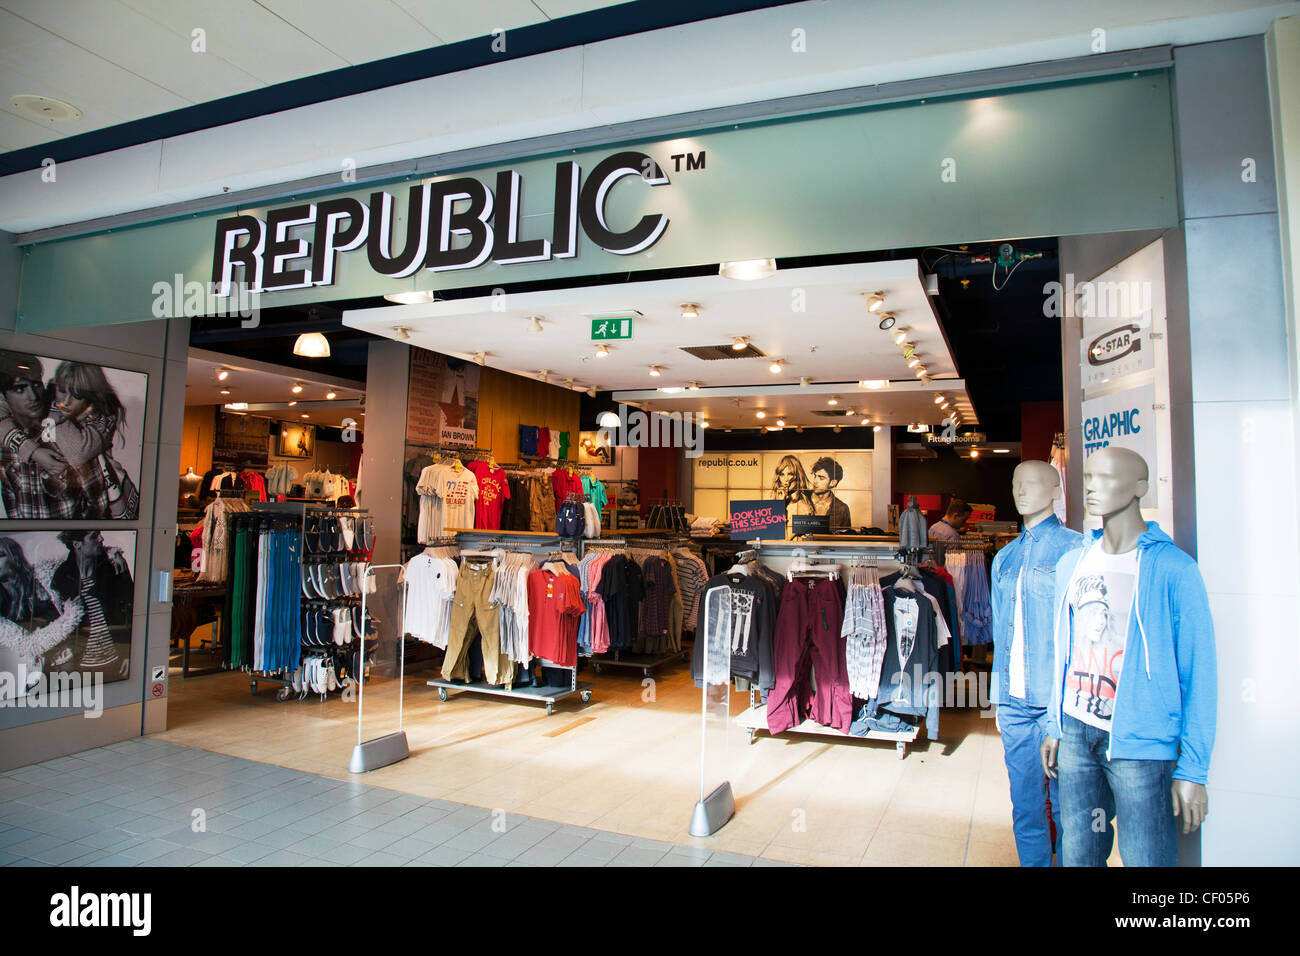 Republic clothes shop immagini e fotografie stock ad alta risoluzione -  Alamy